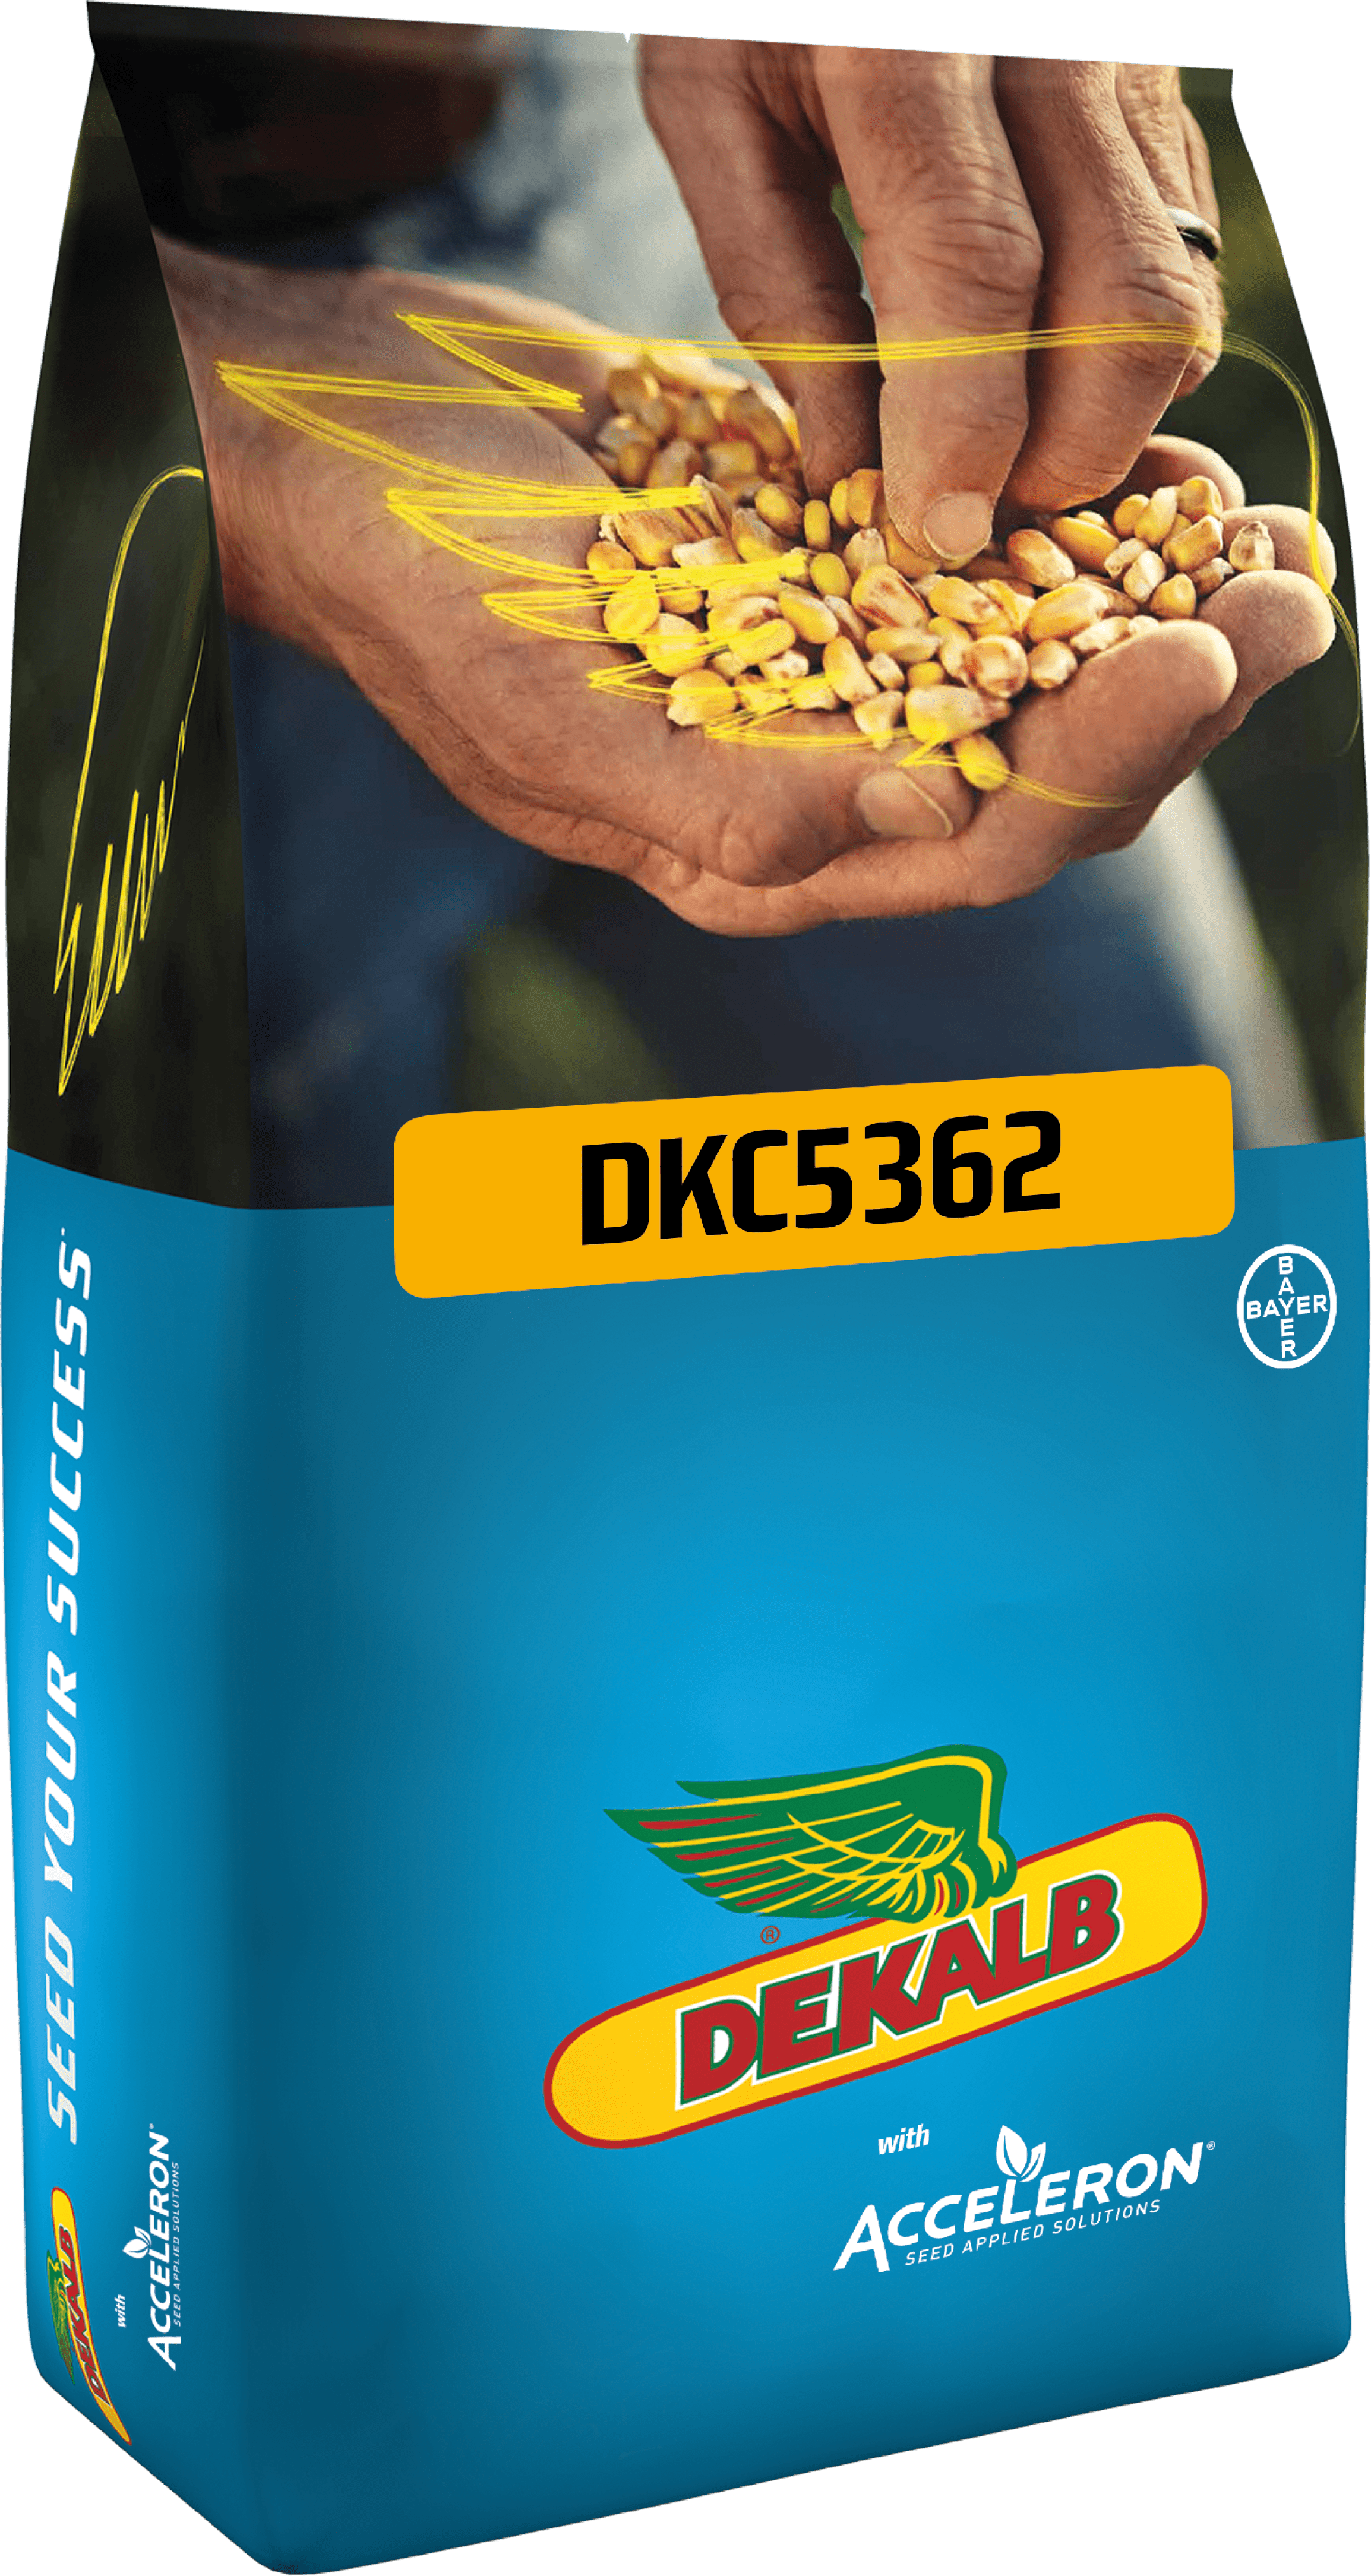 DKC5362